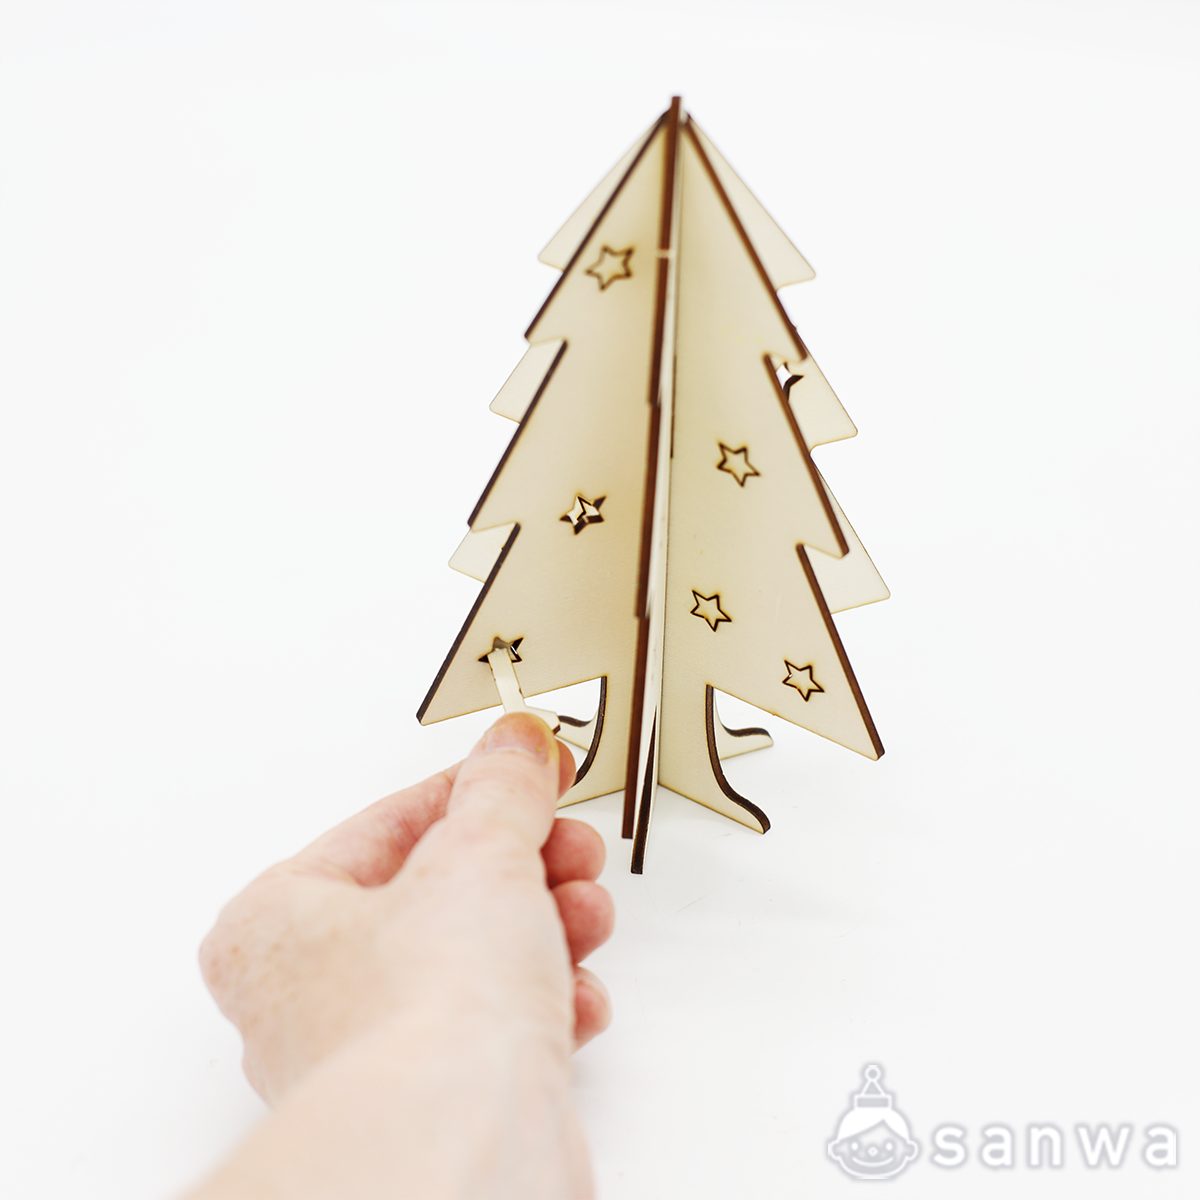 塗るだけ簡単」かんたん木製クリスマスツリー【クリスマス工作キット】（作って飾れる） | イベント工作キットの「たのつく」